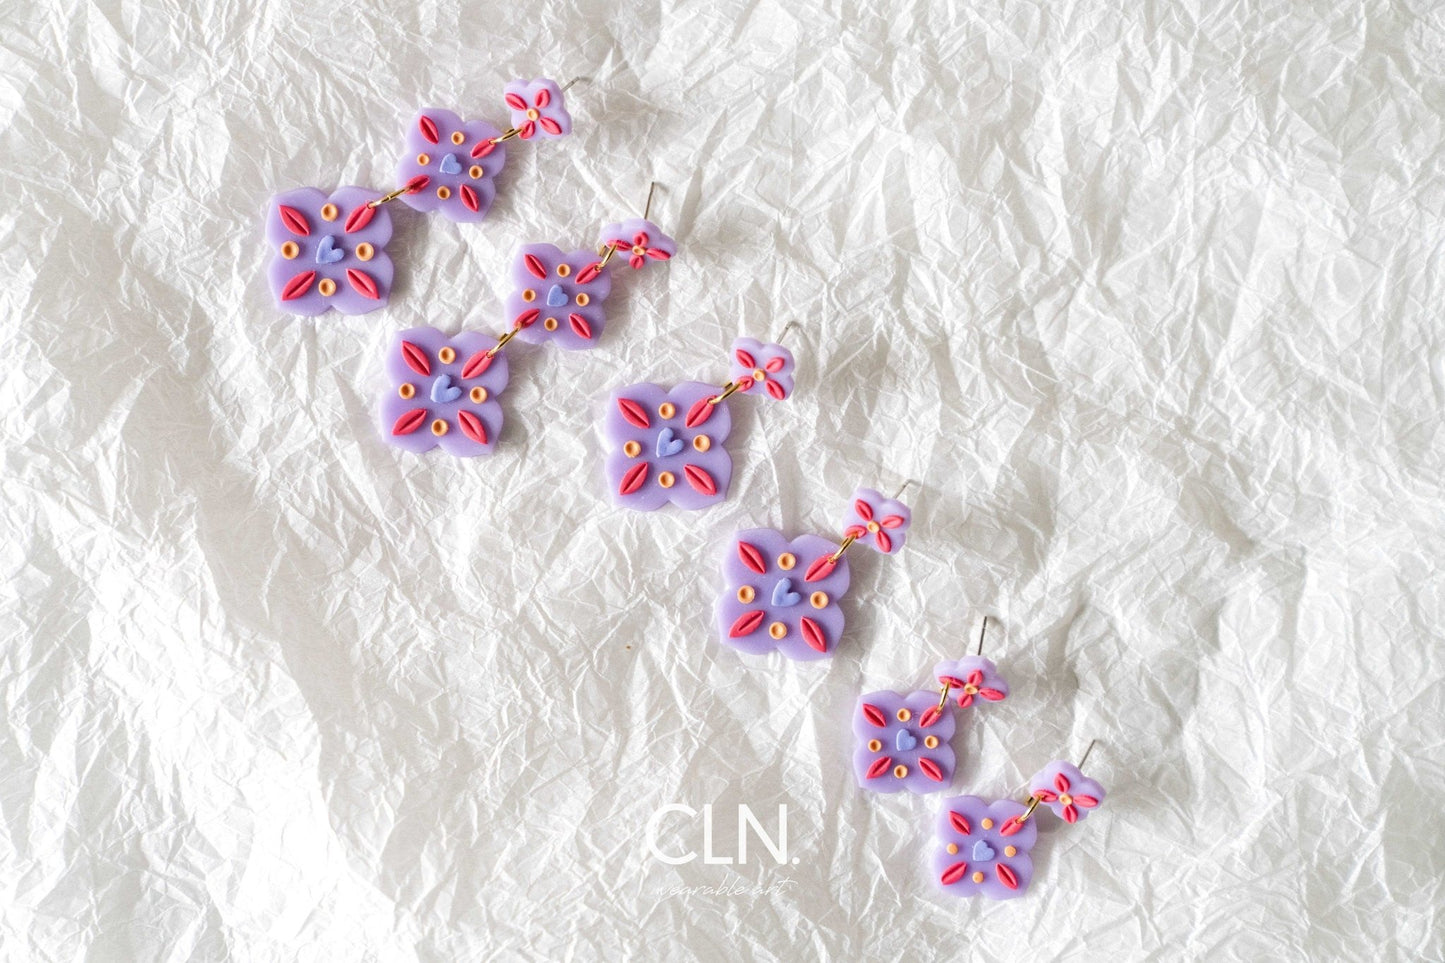 Lilac Tiles - Earrings - CLN Atelier